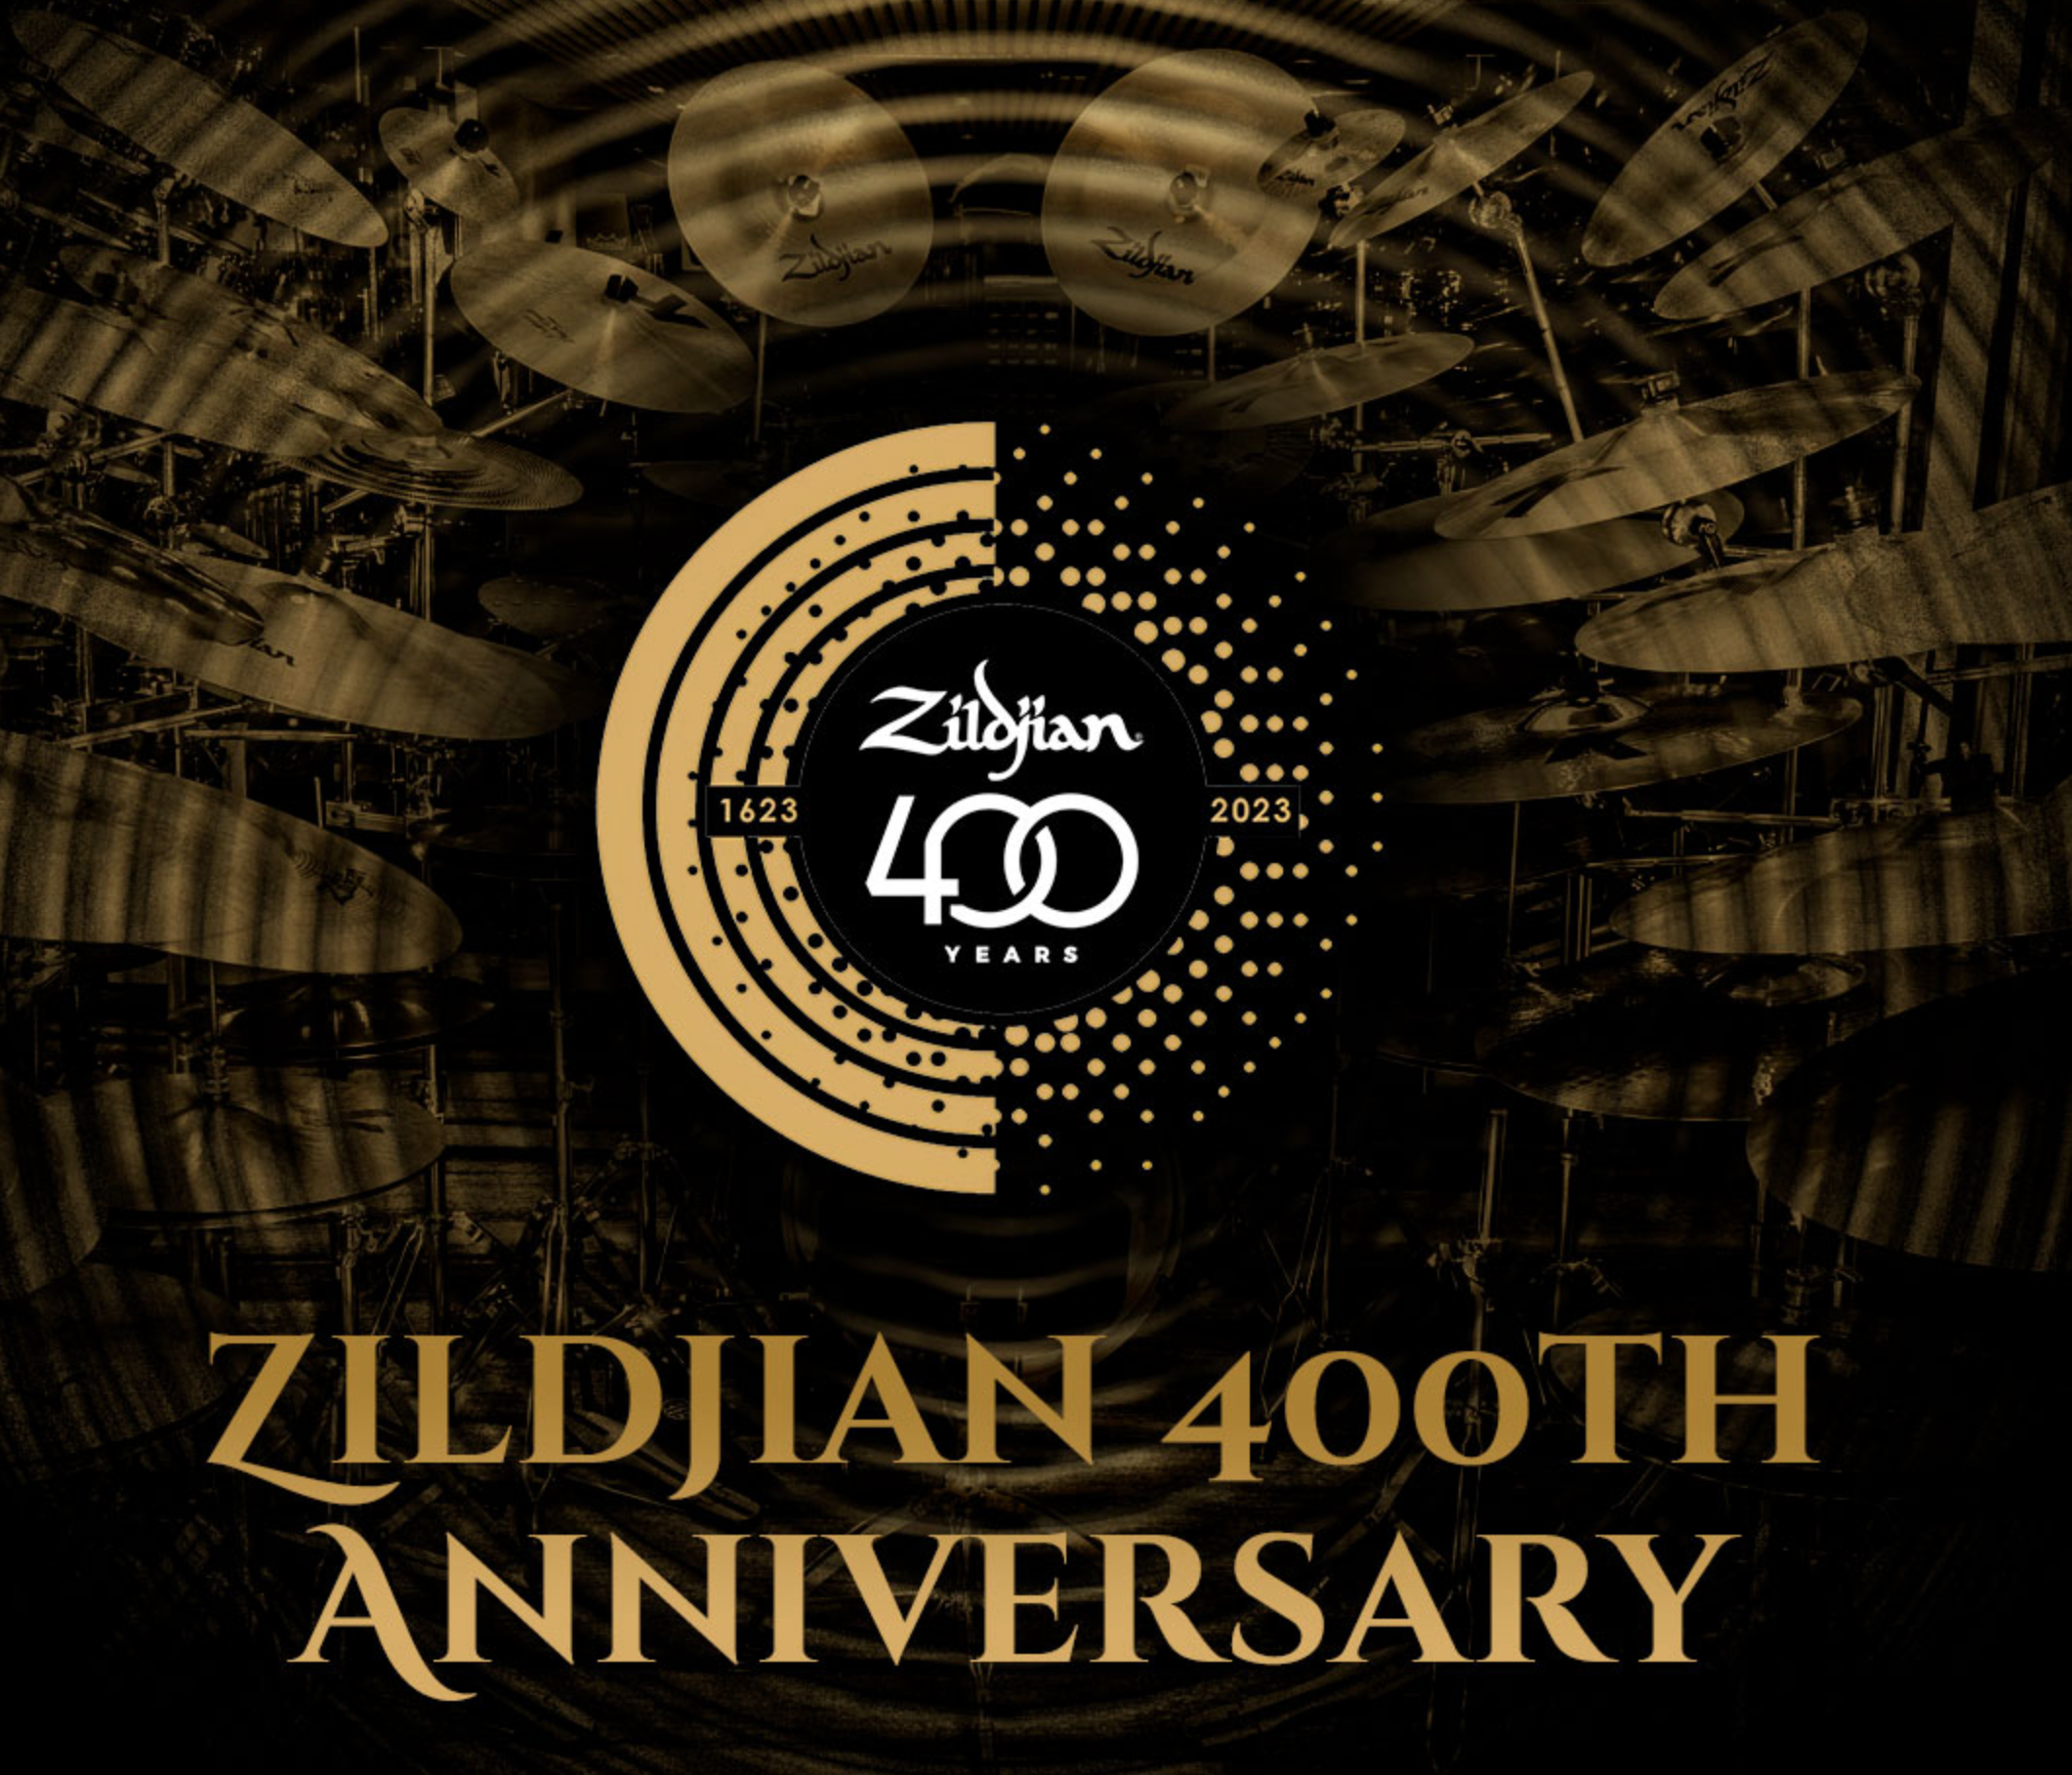 Celebremos junto a Zildjian su Aniversario #400 - Productos Superiores.